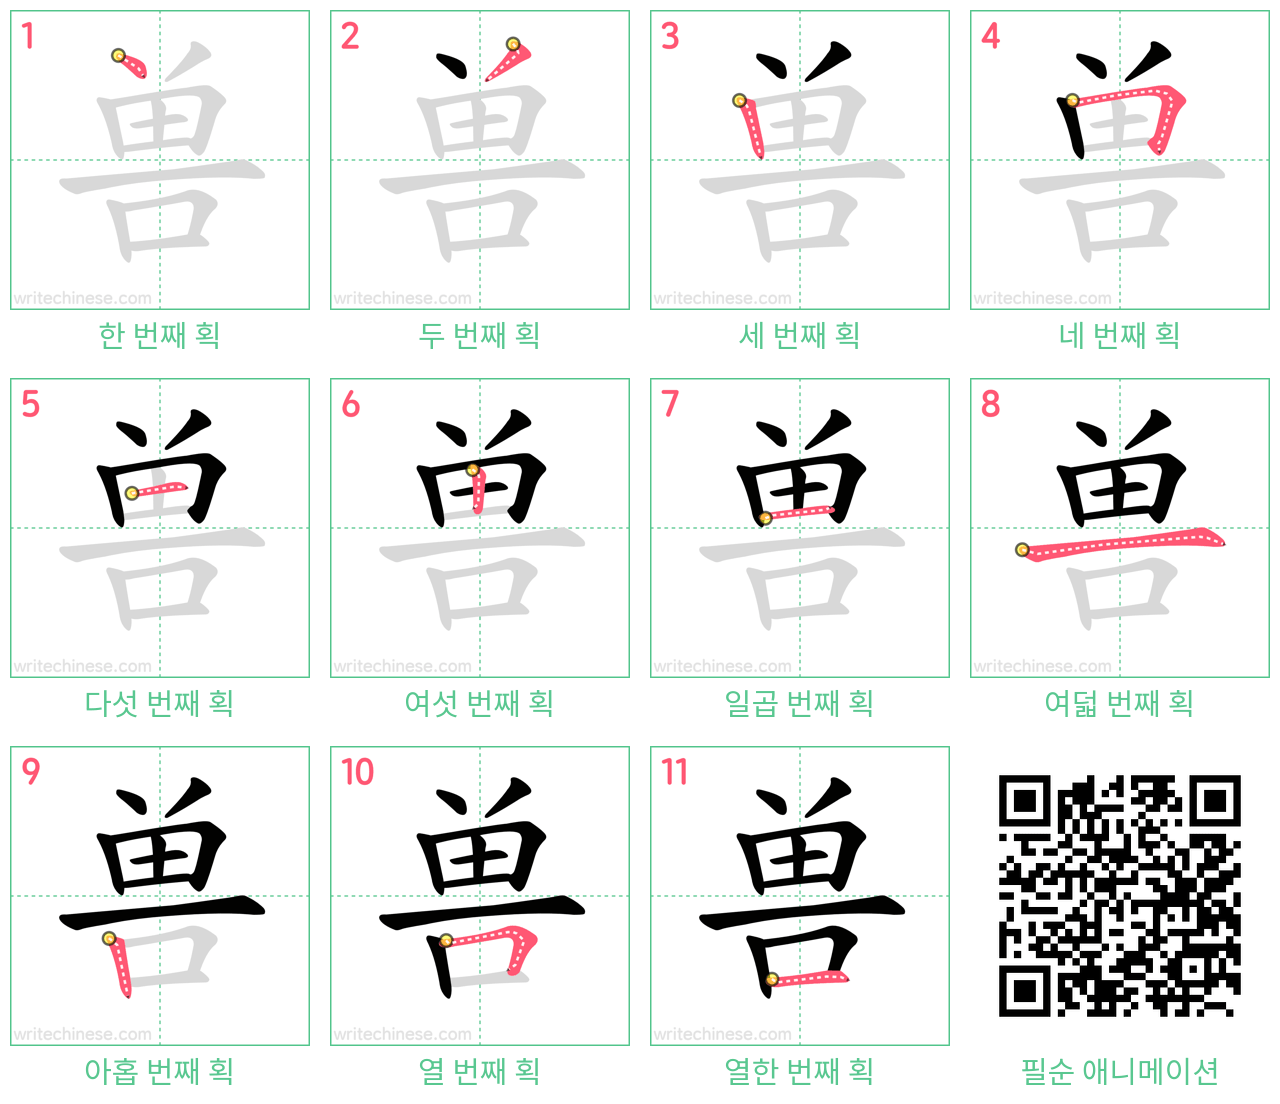 兽 step-by-step stroke order diagrams